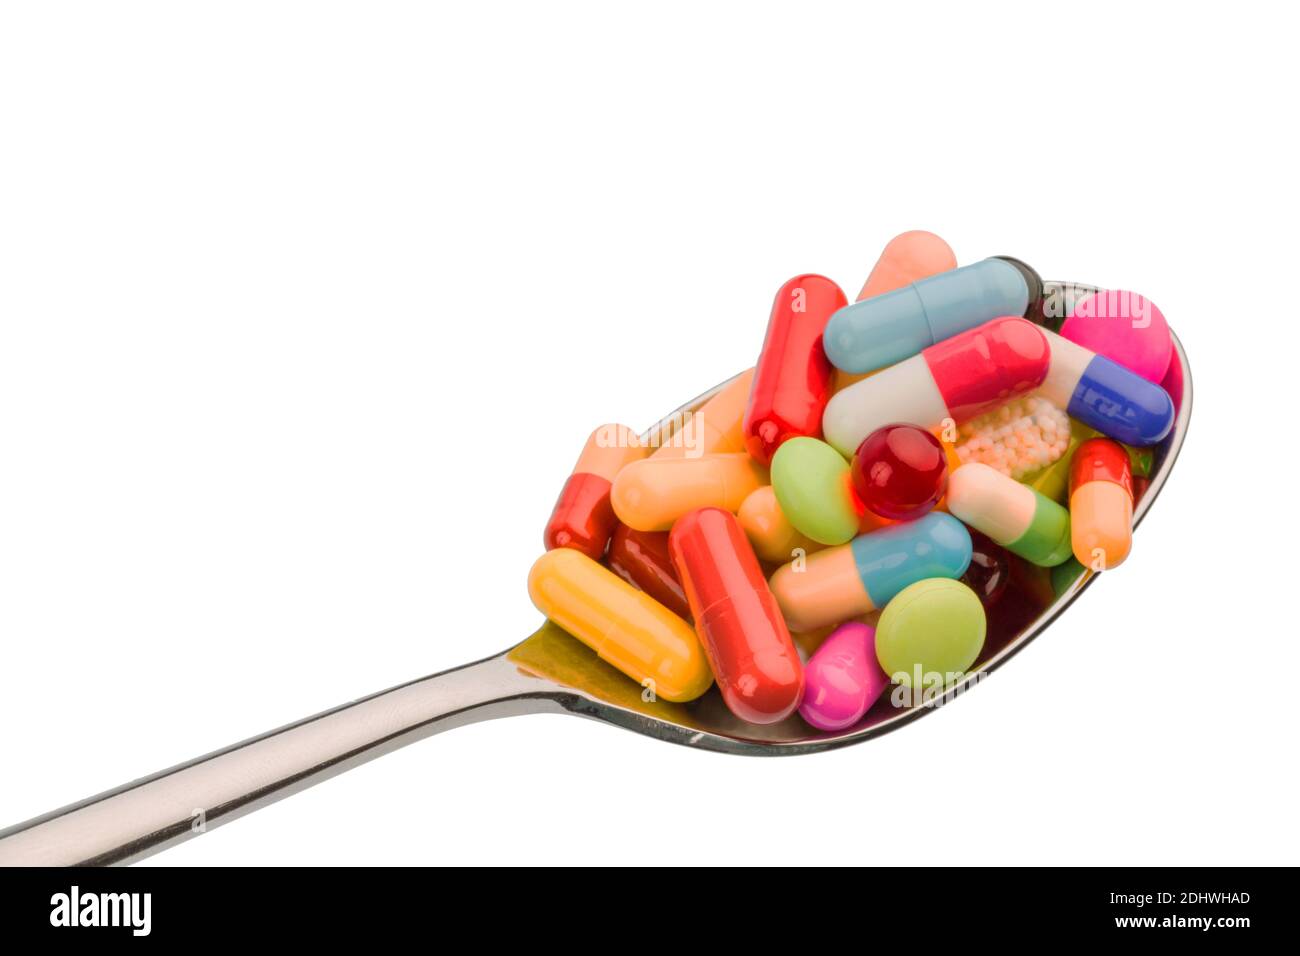 Viele bunte Tabletten auf einem Löffel. Symbolfoto für Tablettensucht und Missbrauch von Medikamenten. Stock Photo